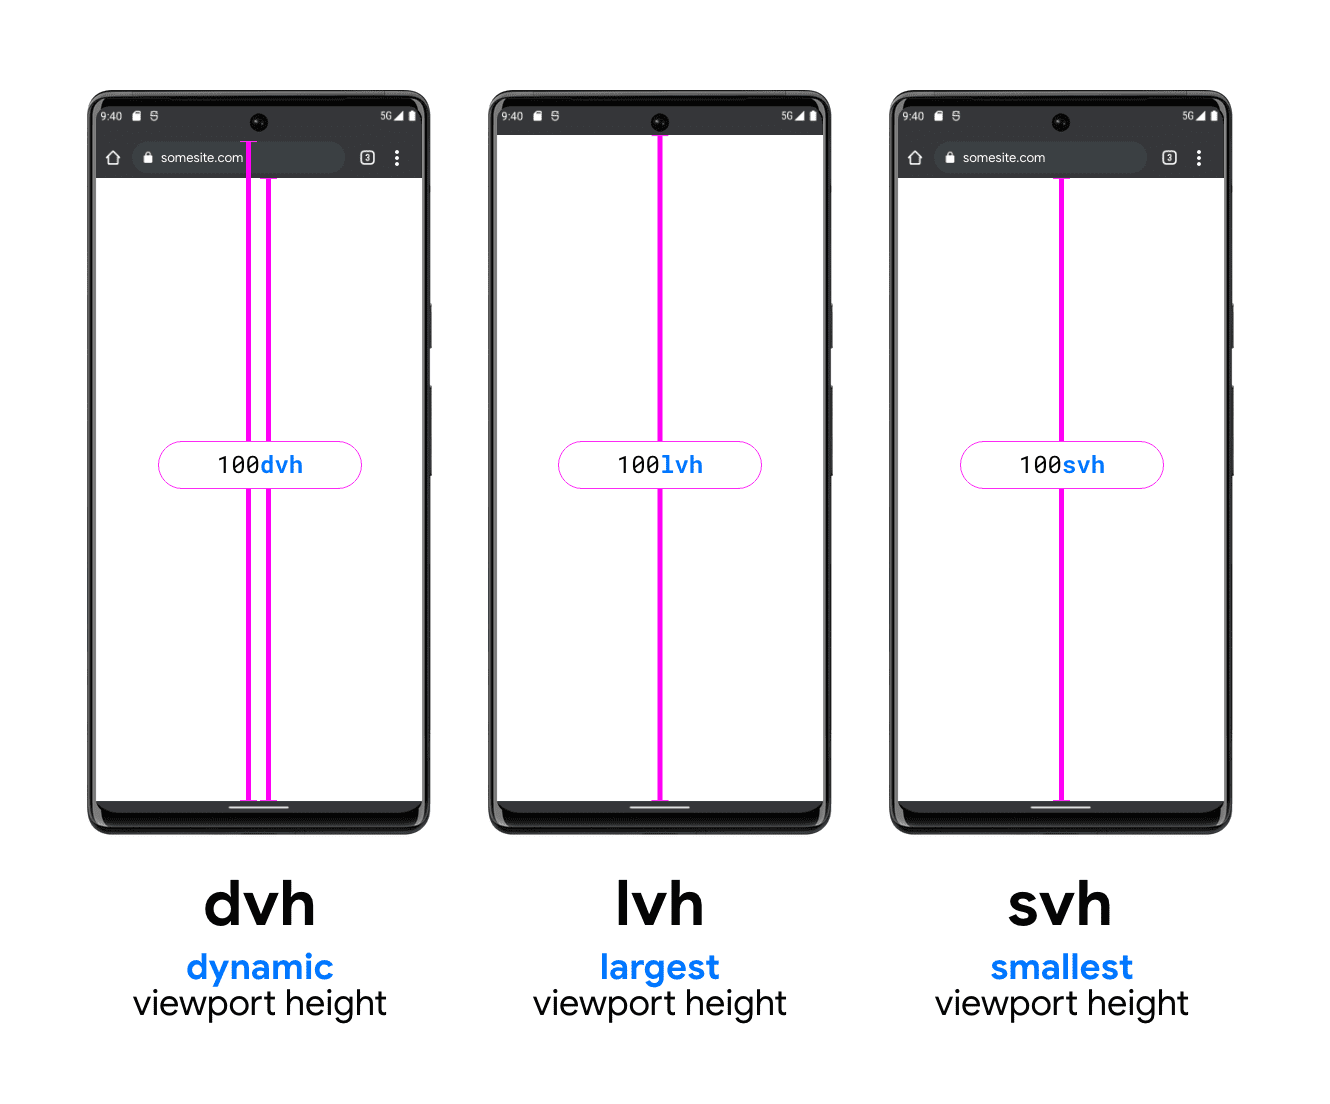 तीन फ़ोन वाला ग्राफ़िक, जिसमें DVH, LVH, और SVH को दिखाने में मदद की गई है. DVH के उदाहरण वाले फ़ोन में दो वर्टिकल लाइनें होती हैं, एक खोज बार के नीचे और व्यूपोर्ट के नीचे और एक खोज बार के ऊपर (सिस्टम के स्टेटस बार के नीचे), व्यूपोर्ट के नीचे तक होती है. इससे पता चलता है कि DVH इन दोनों में से किसी भी लंबाई में कैसे काम कर सकता है. LVH को डिवाइस के स्टेटस बार के नीचे और फ़ोन के व्यूपोर्ट के बटन के बीच एक लाइन के बीच में दिखाया जाता है. आखिरी उदाहरण SVH यूनिट का उदाहरण है. इसमें ब्राउज़र के खोज बार के नीचे से लेकर
 व्यूपोर्ट के नीचे तक एक लाइन दिखाई गई है